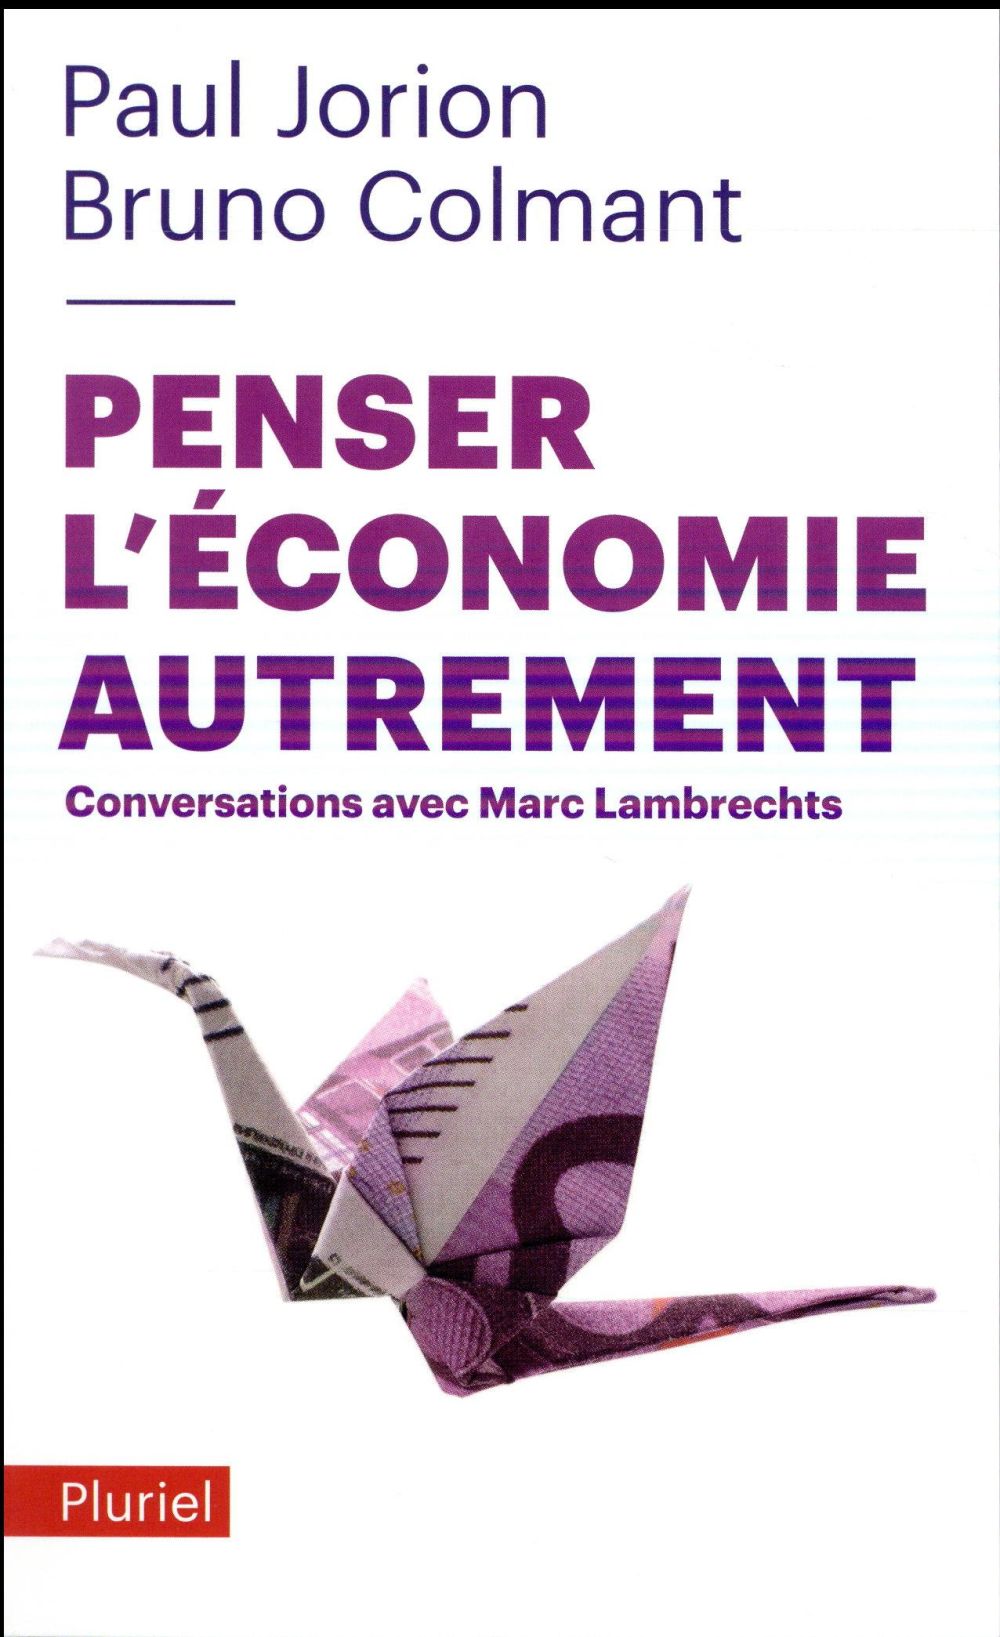 PENSER L'ECONOMIE AUTREMENT - CONVERSATIONS AVEC MARC LAMBRECHTS